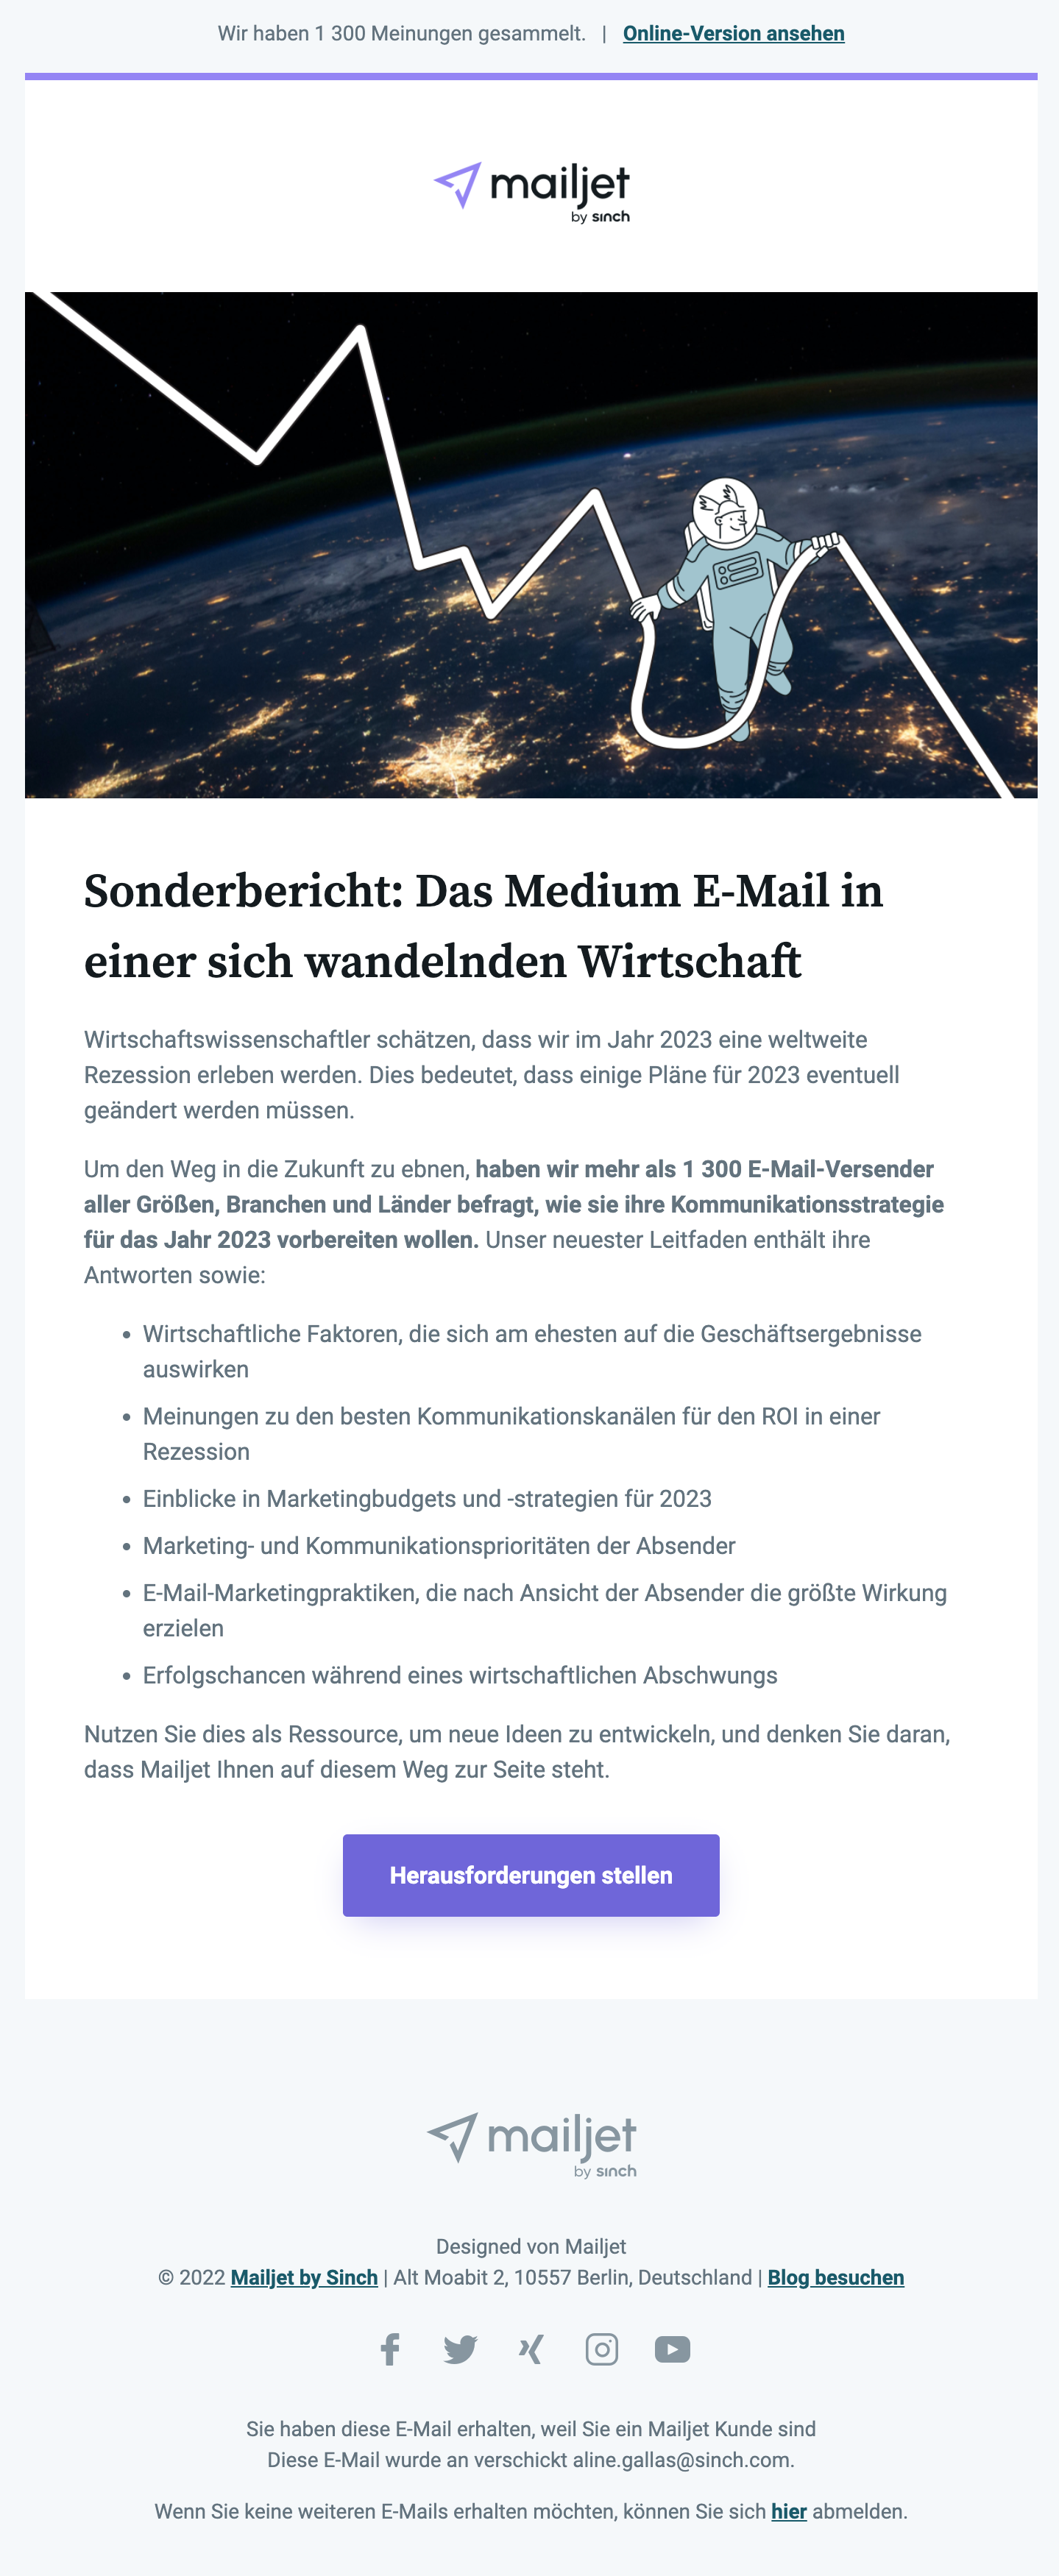 Beispiel für den deutschsprachigen Mailjet-Newsletter.